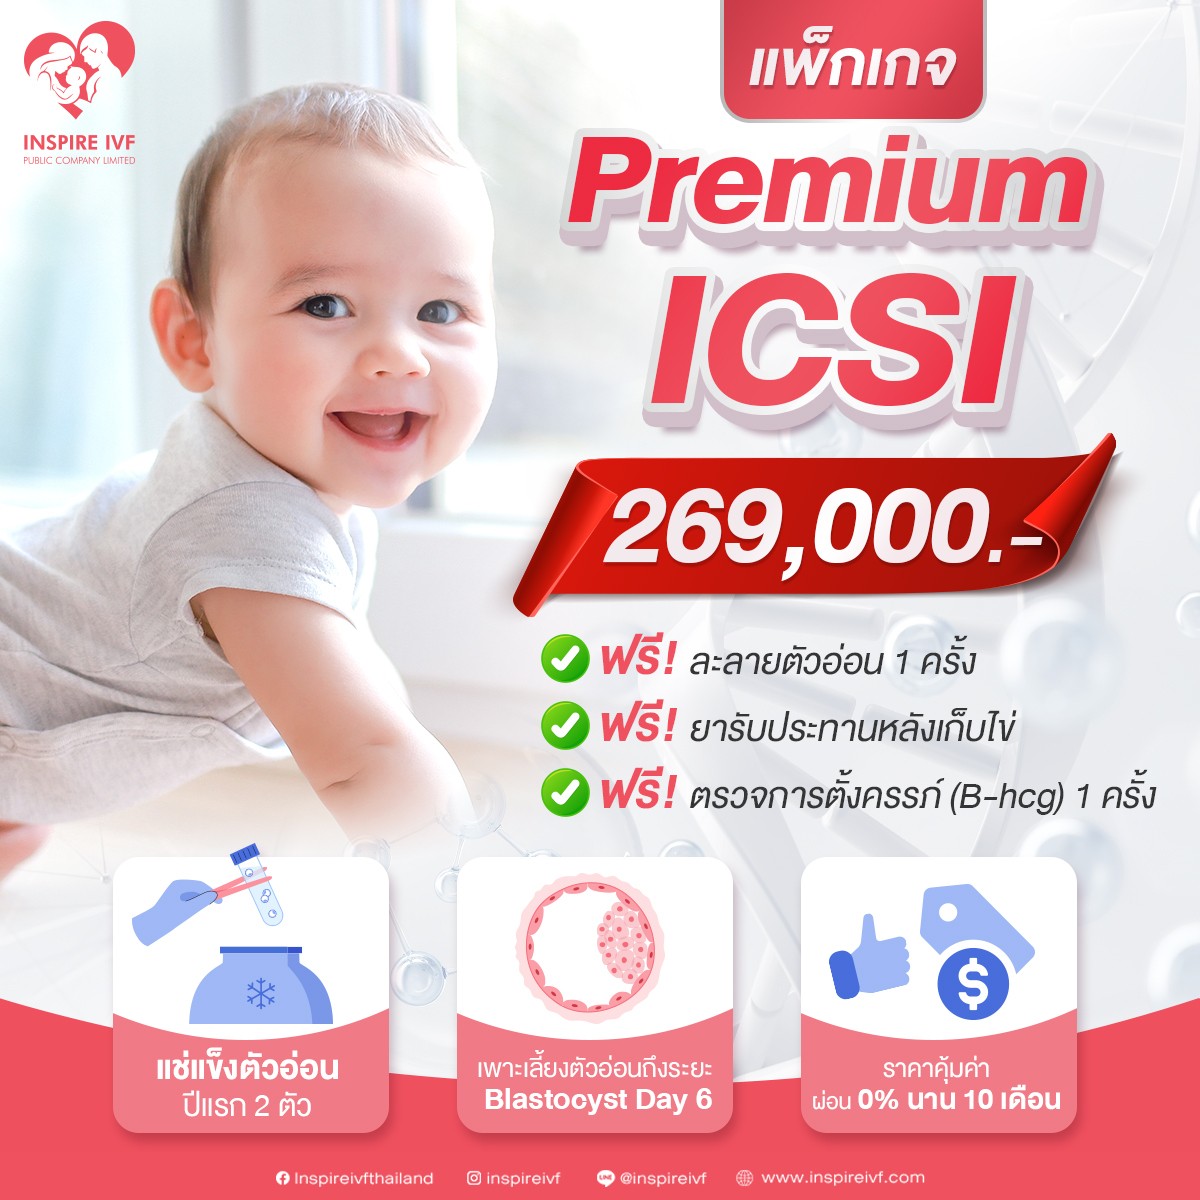 โปรลดร้อนแรงสุดพรีเมียม! แพ็กเกจ Premium 'ICSI'